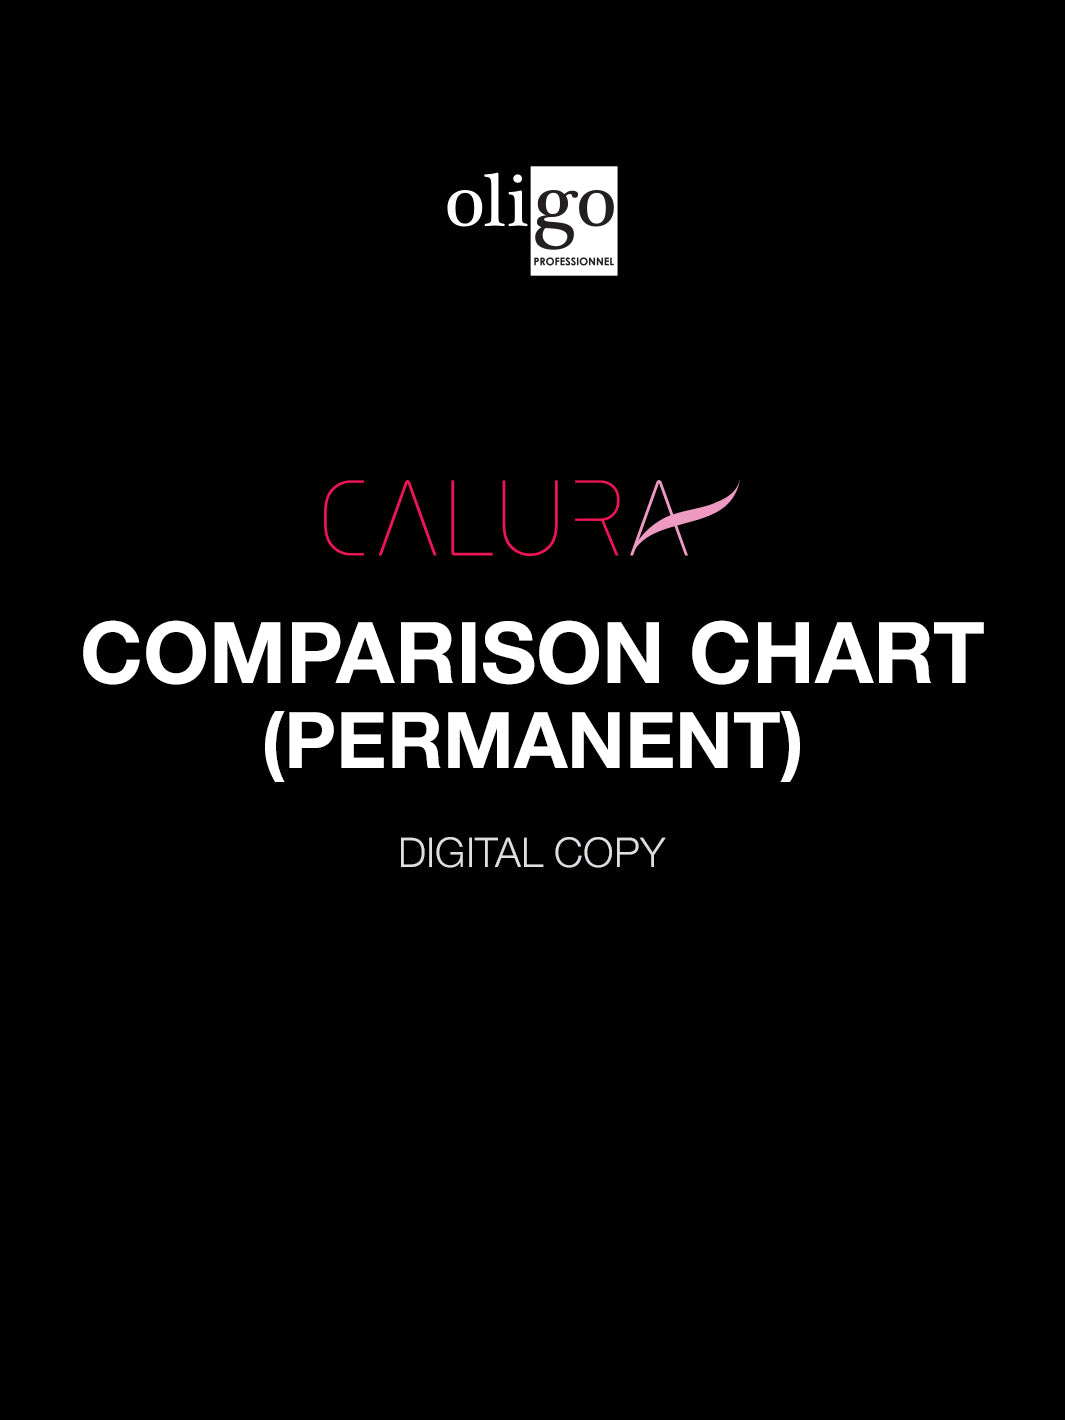 Comparison Charts - Calura Permanent (digital copy)